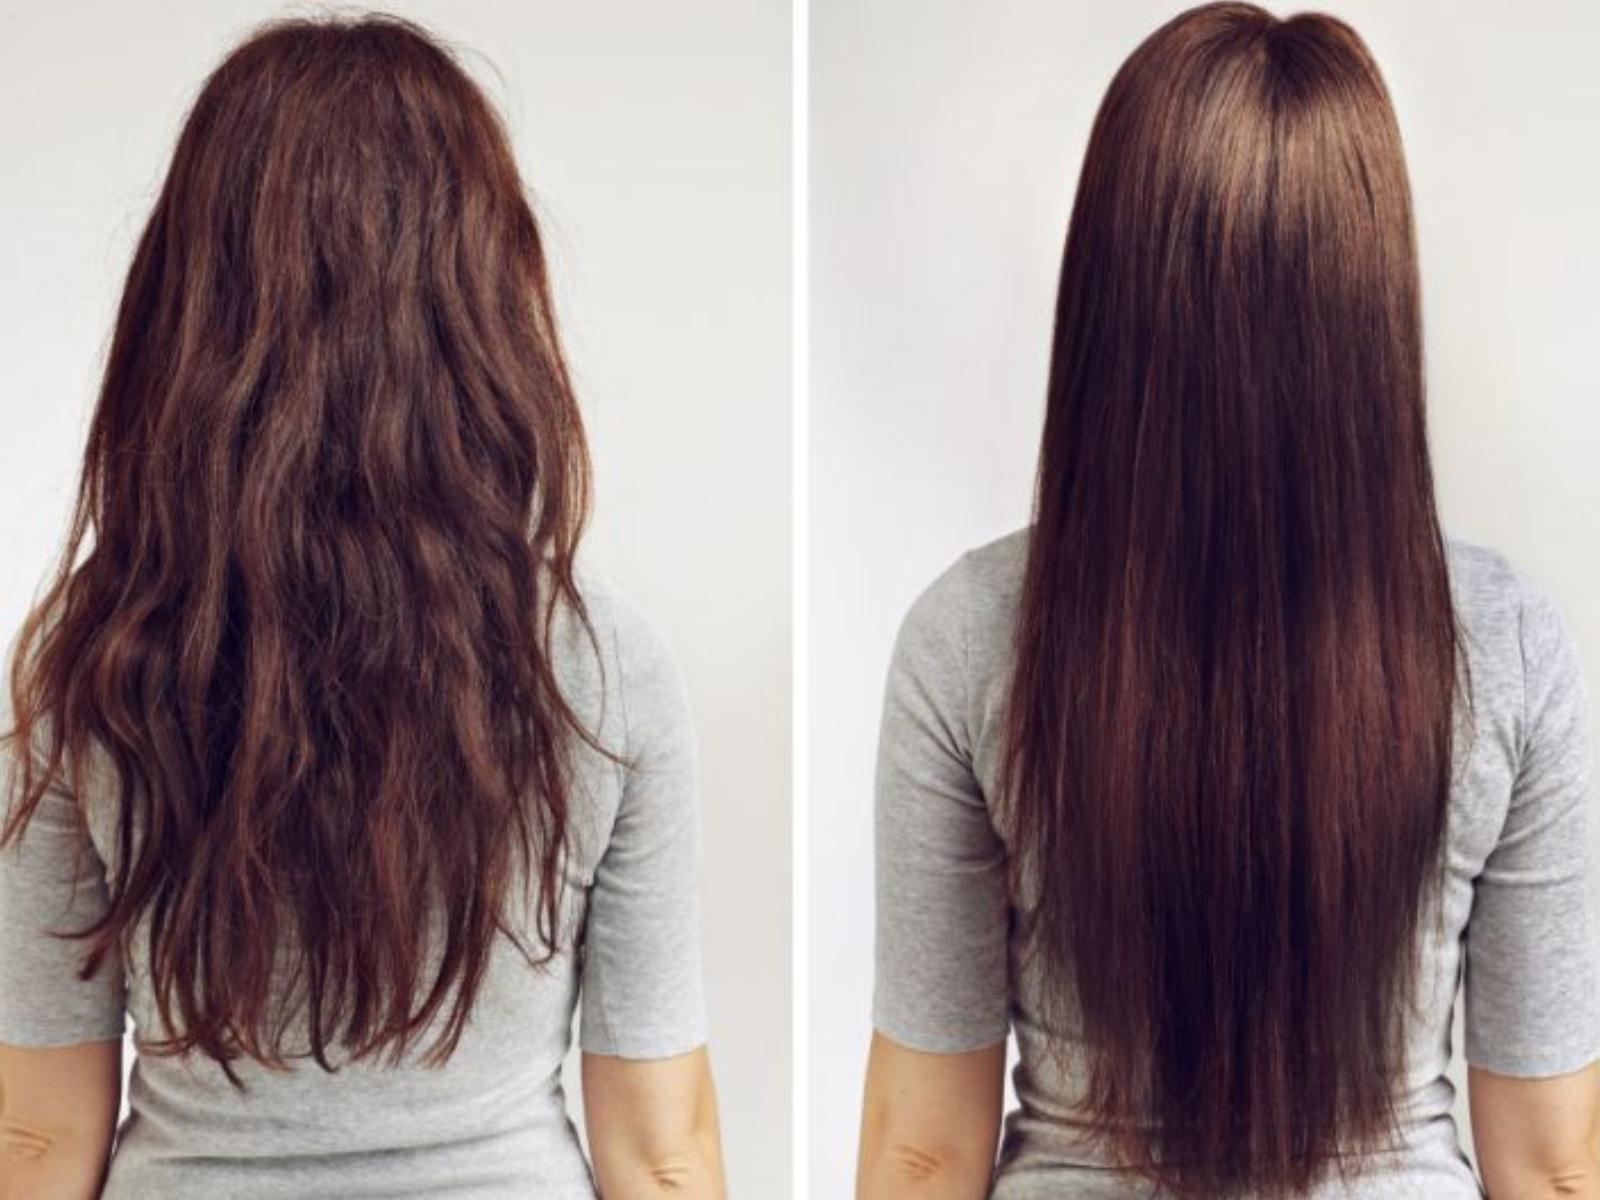 Δείτε πως μπορείτε να μακρύνεται τα μαλλιά σας μέσα σε λίγες ημέρες με ένα υλικό